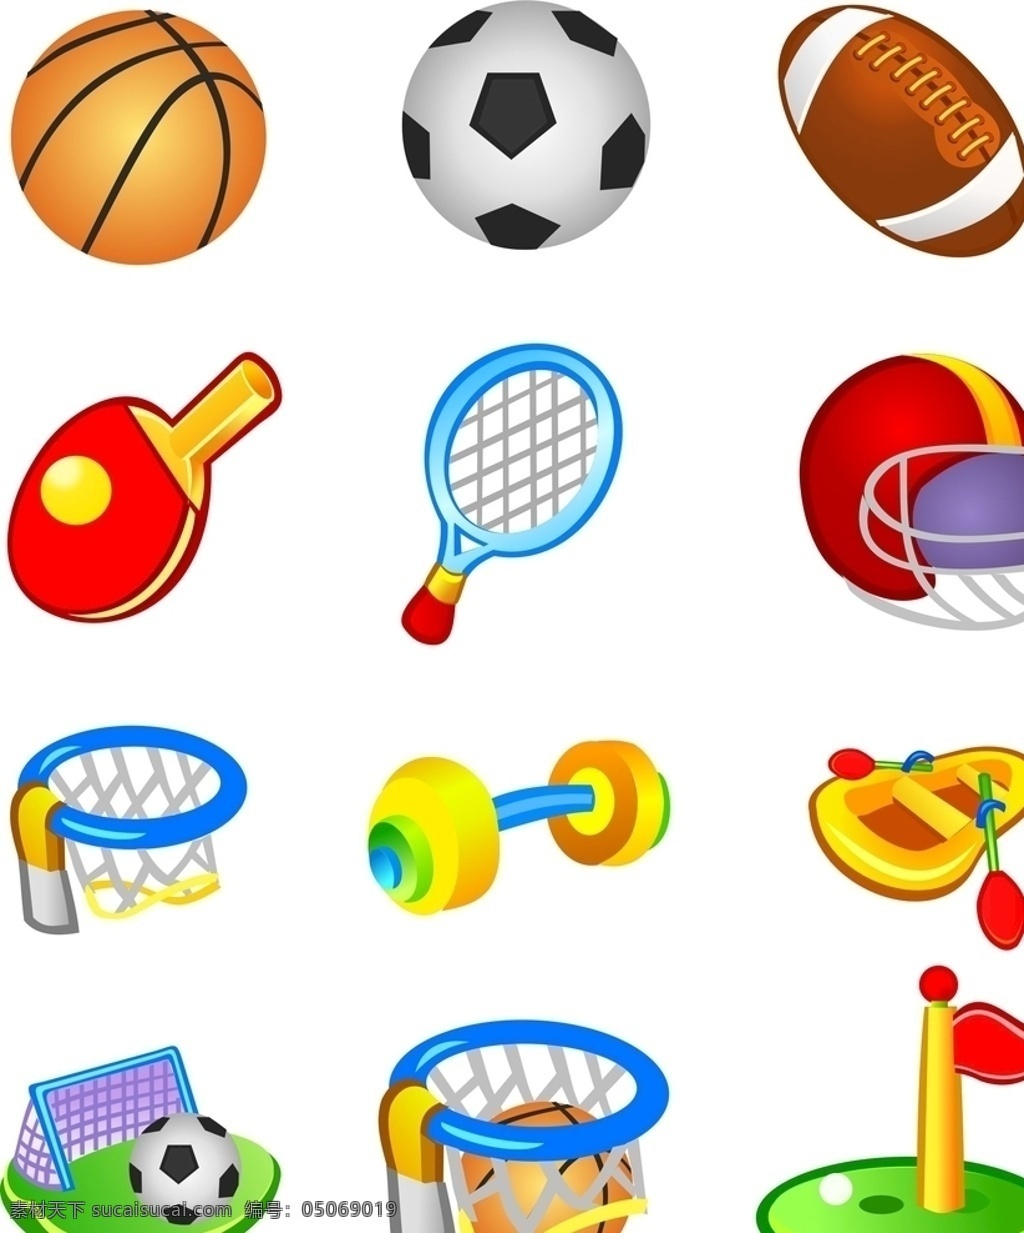 体育用品矢量 体育用品 矢量 篮球 足球 乒乓球 橄榄球 标志图标 其他图标